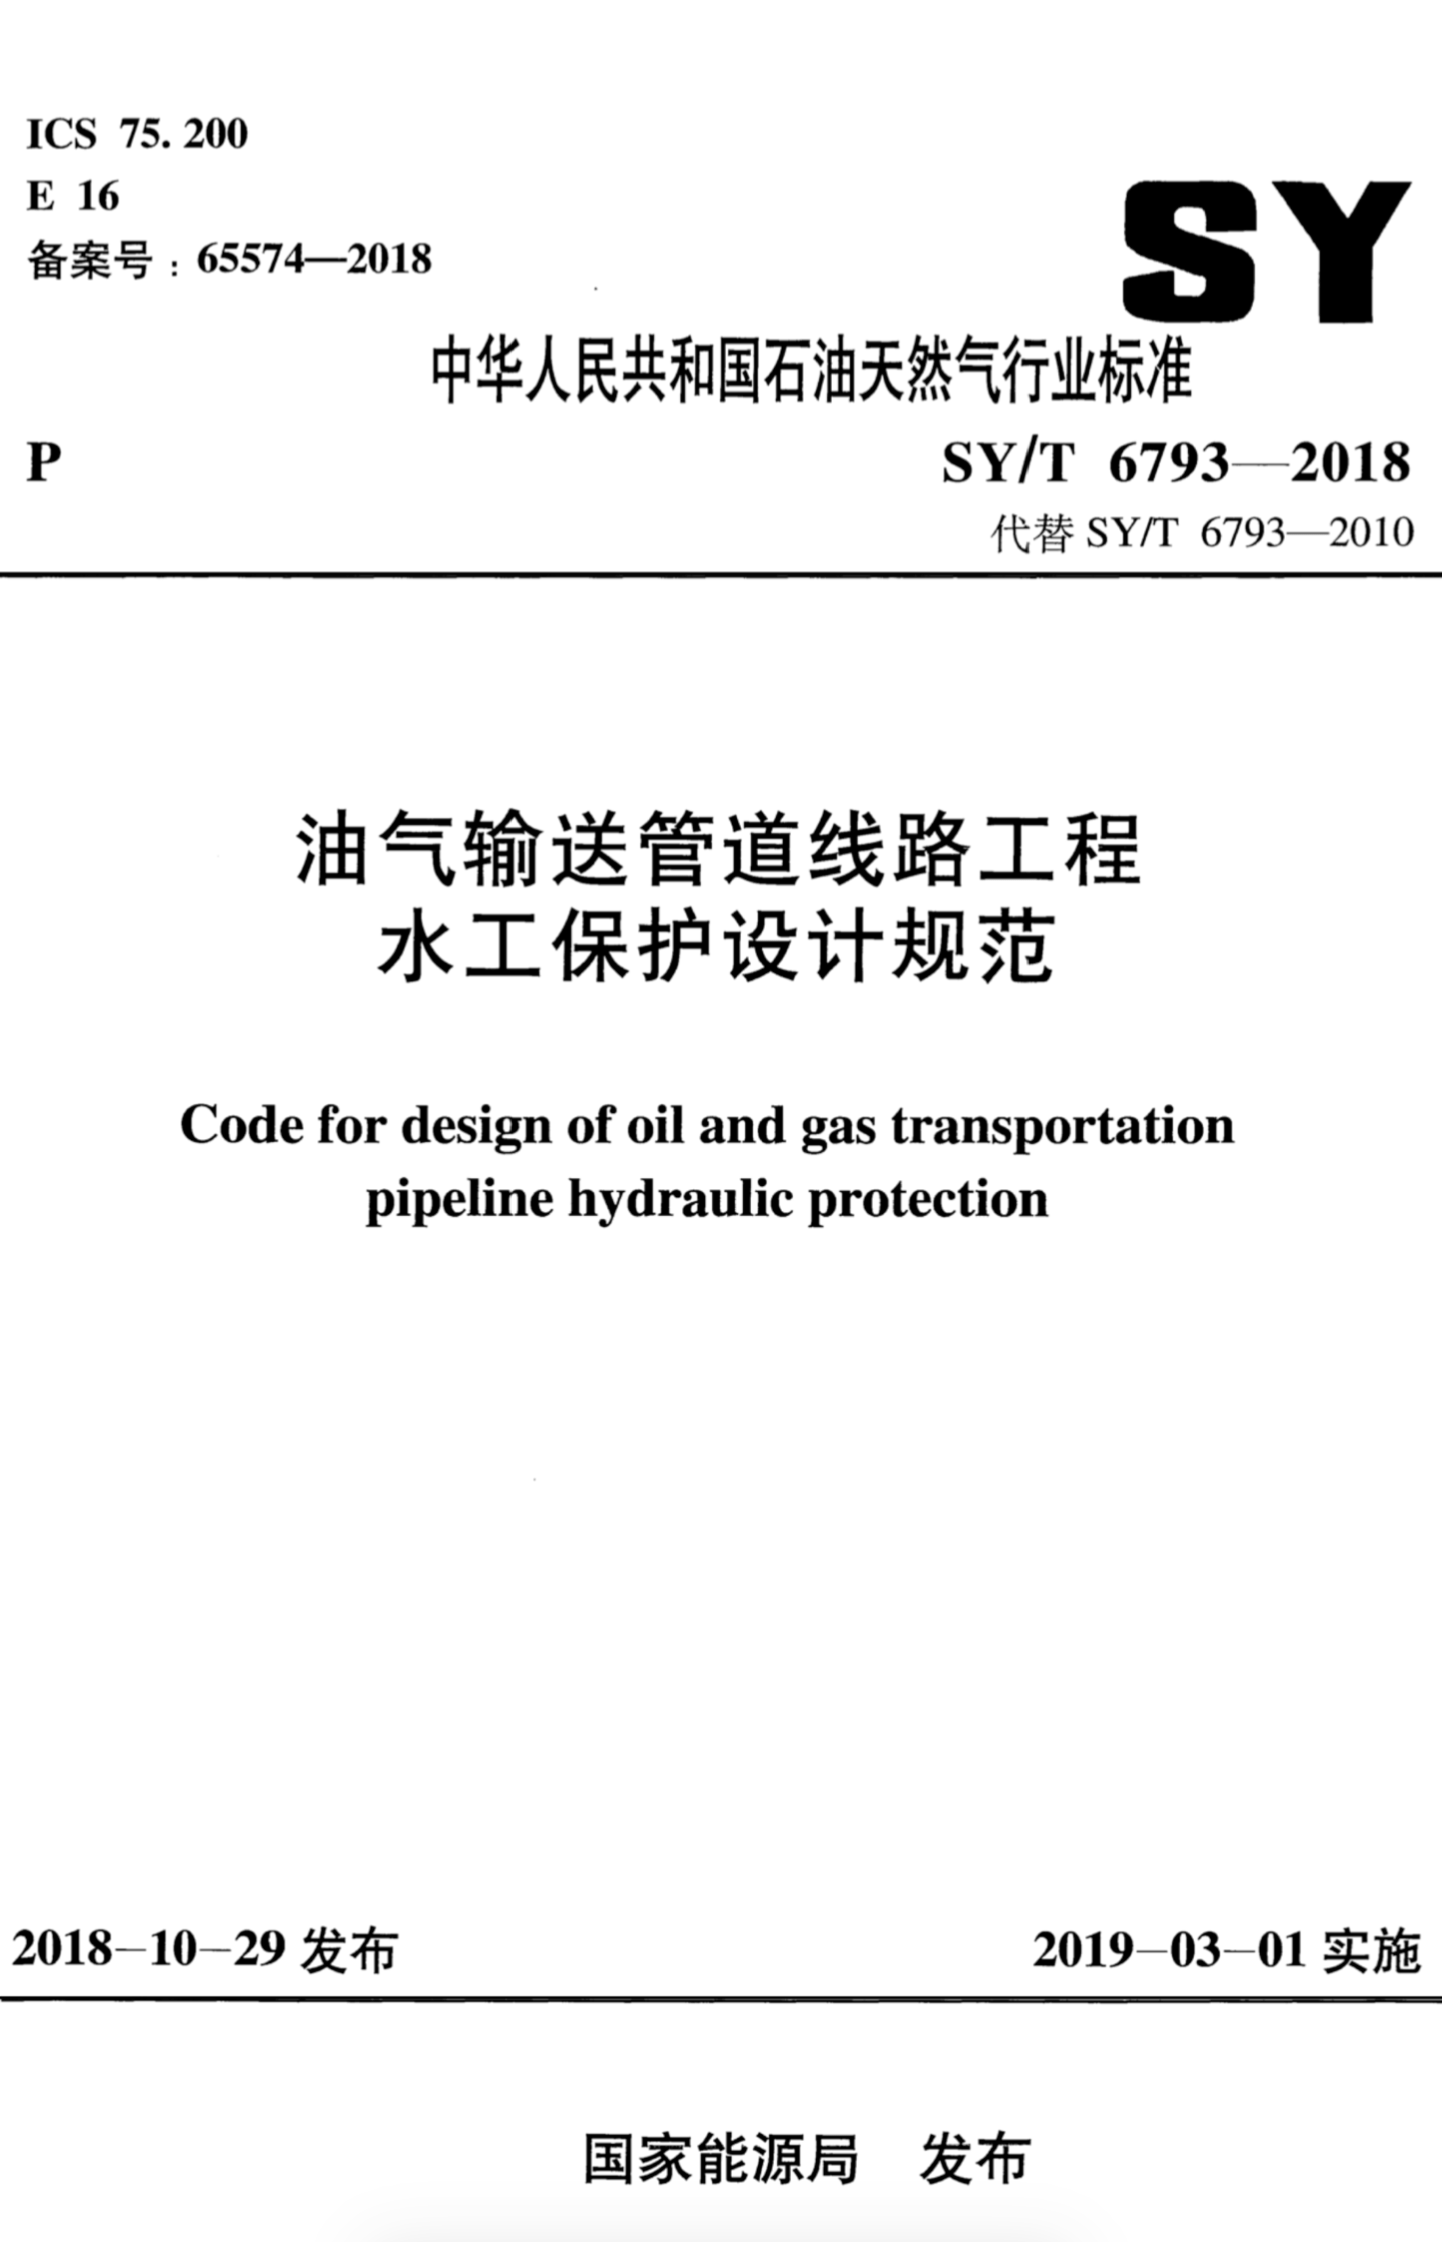 SY/T 6793-2018 油气输送管道线路工程水工保护设计规范